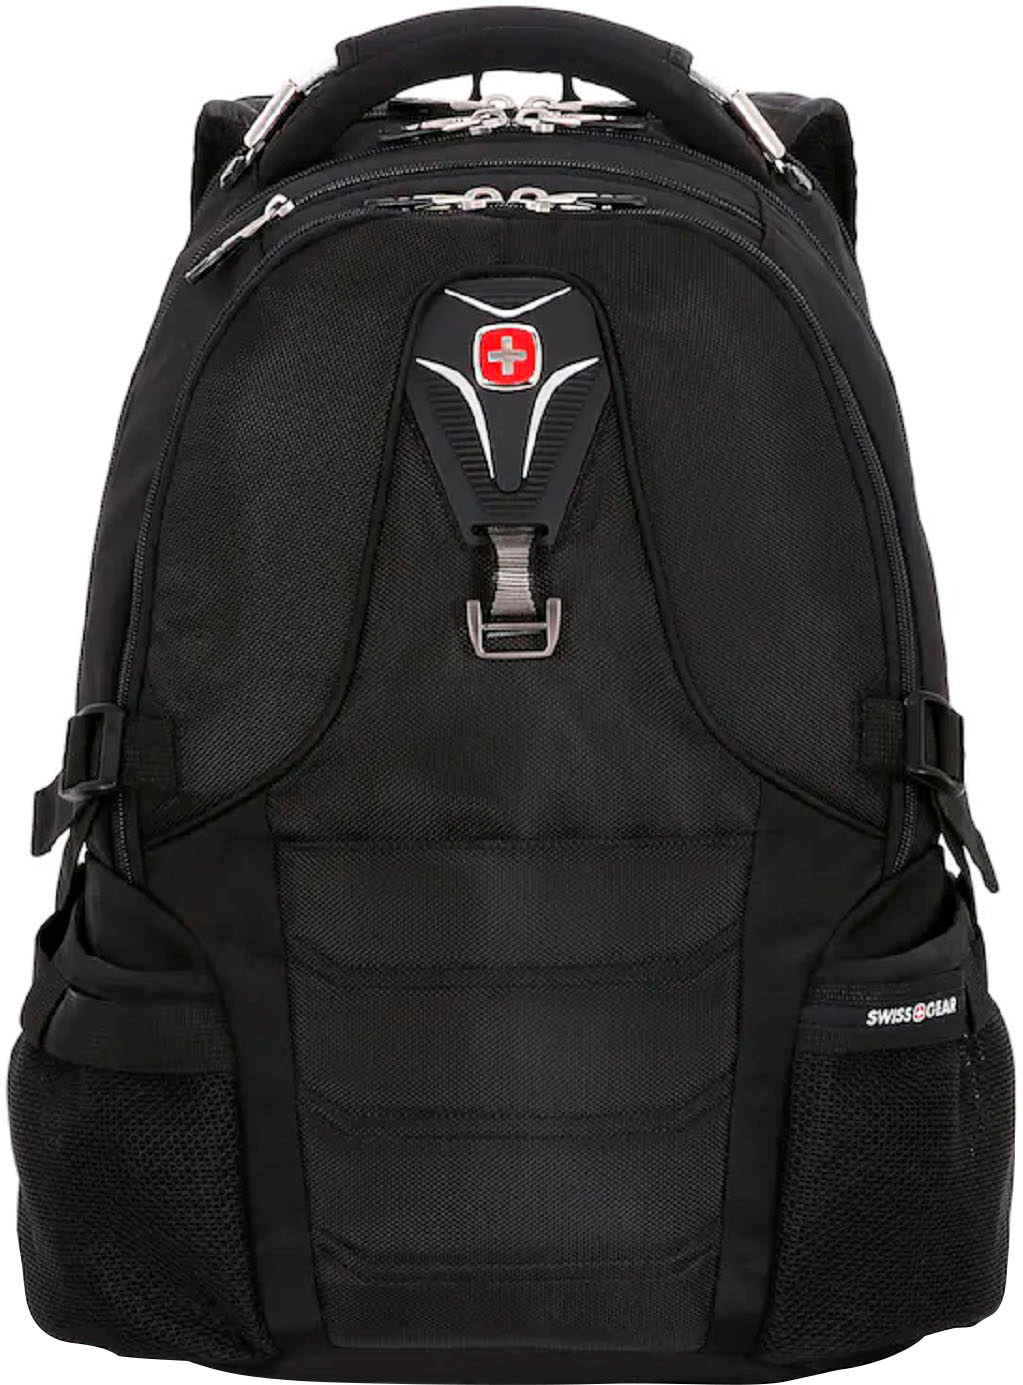 SwissGear SCANSMART Laptop Backpack, Black